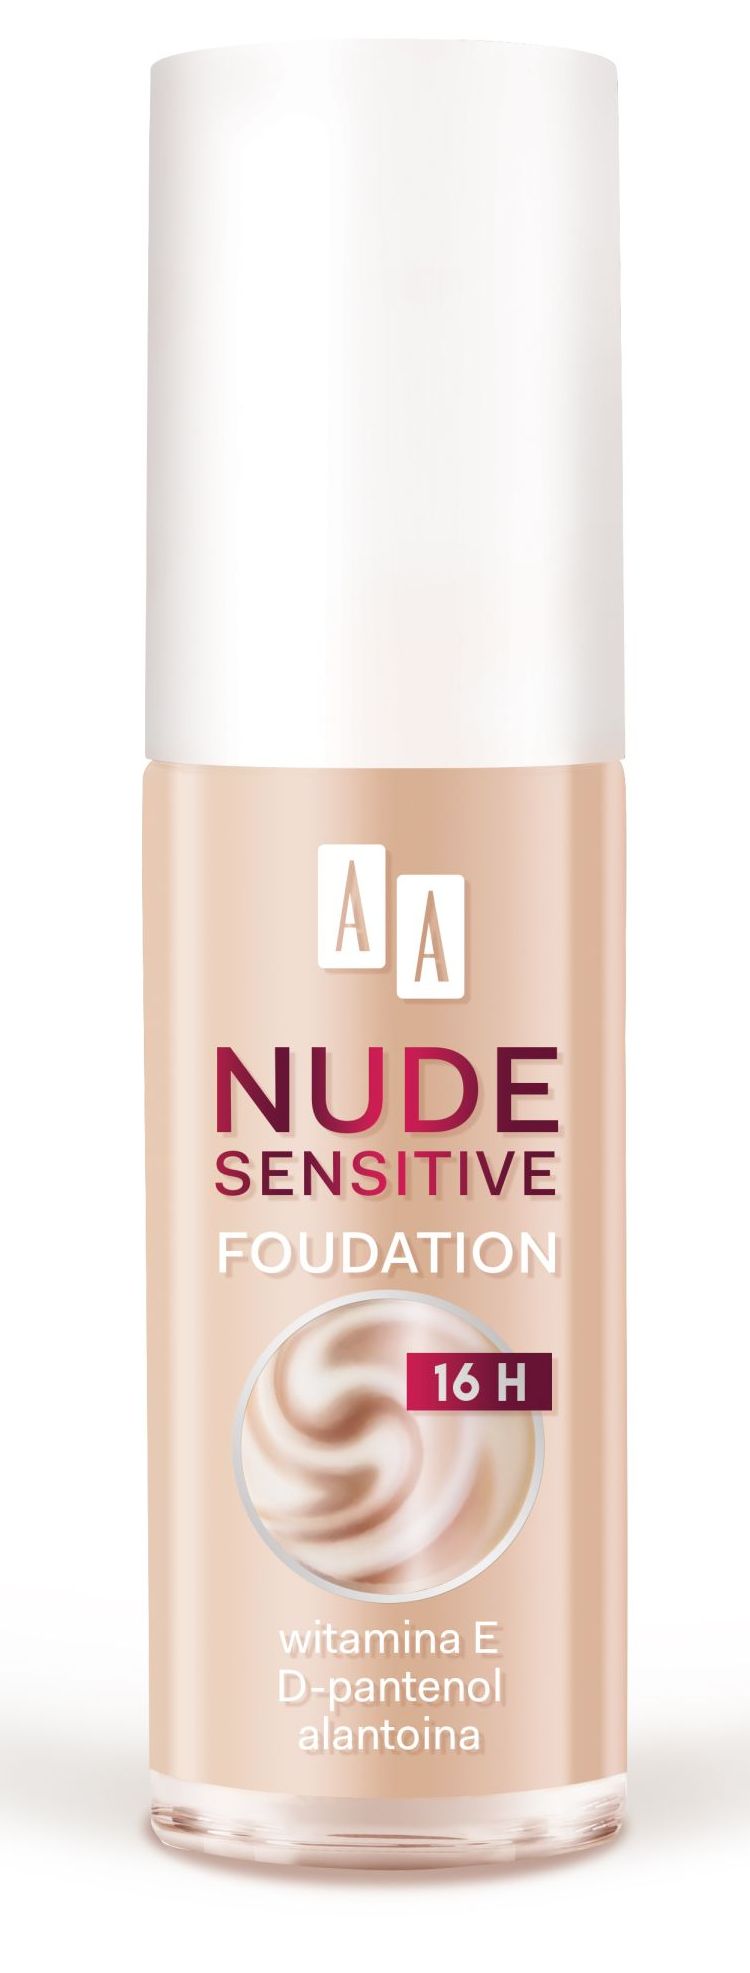 AA Nude Sensitive Foundation tekoči puder